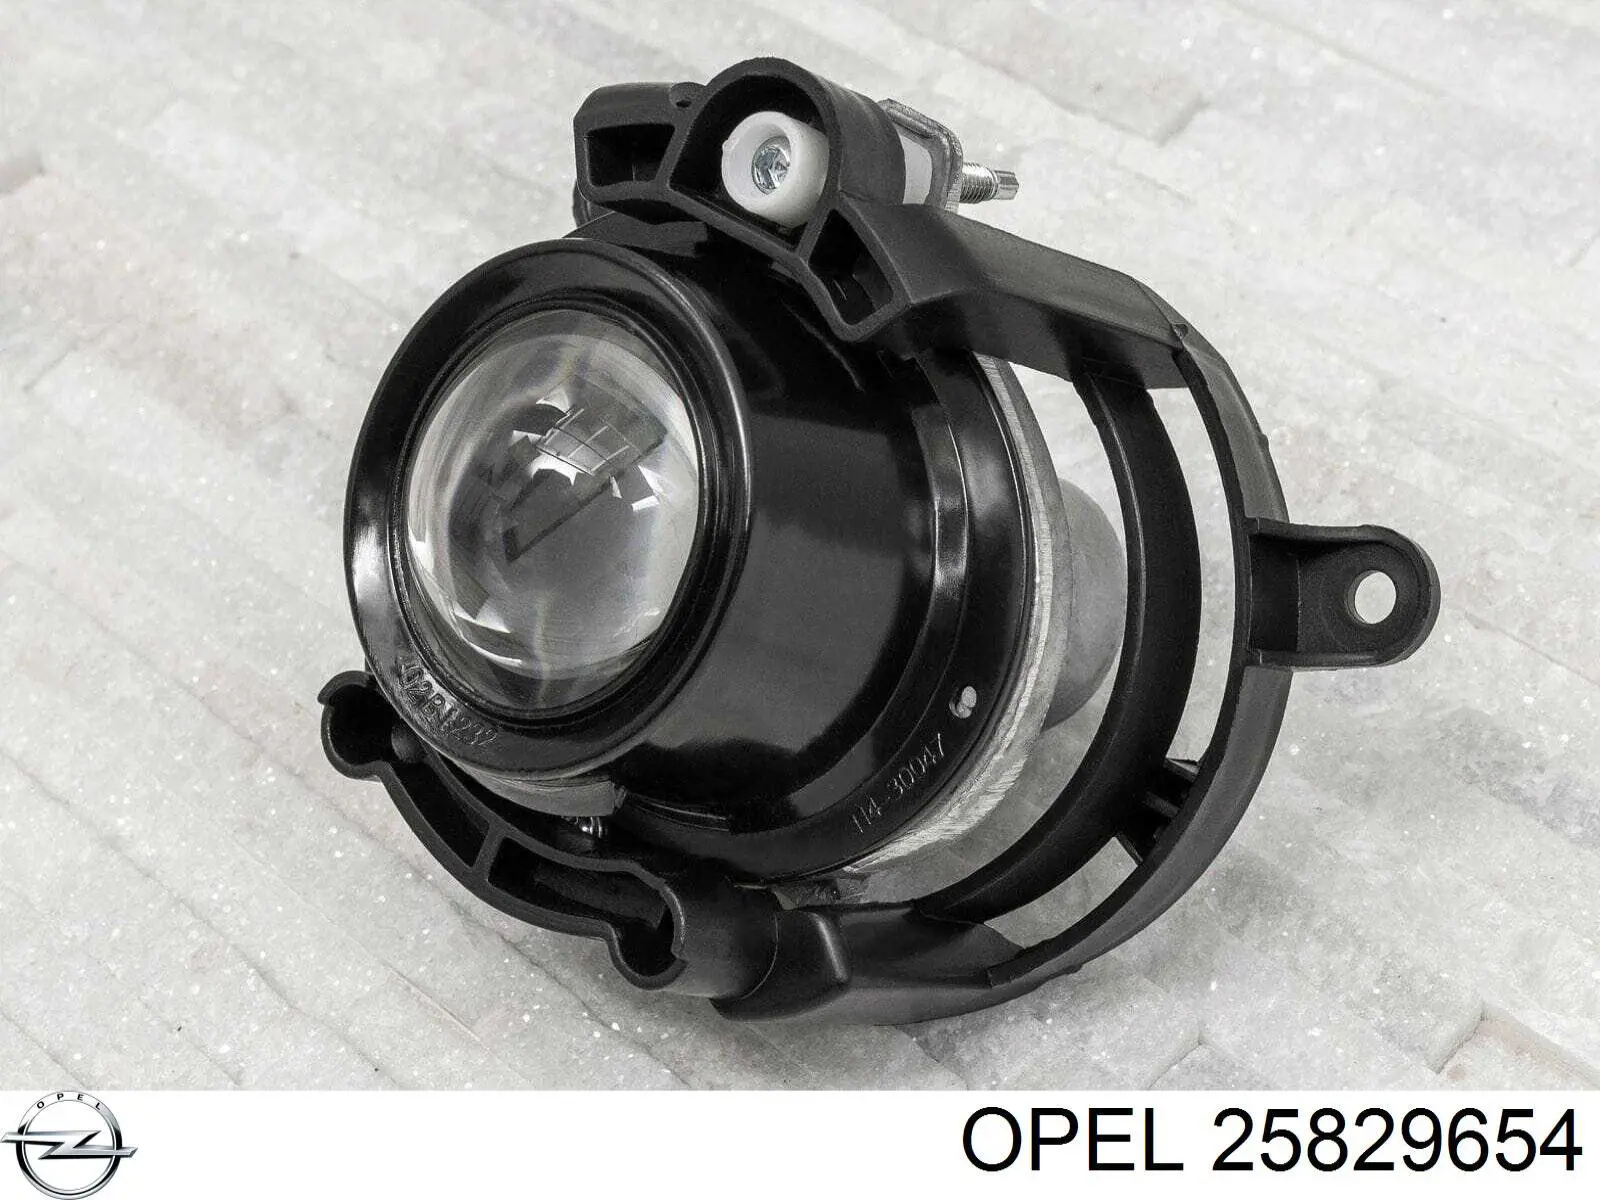 25829654 Opel luzes de nevoeiro esquerdas/direitas